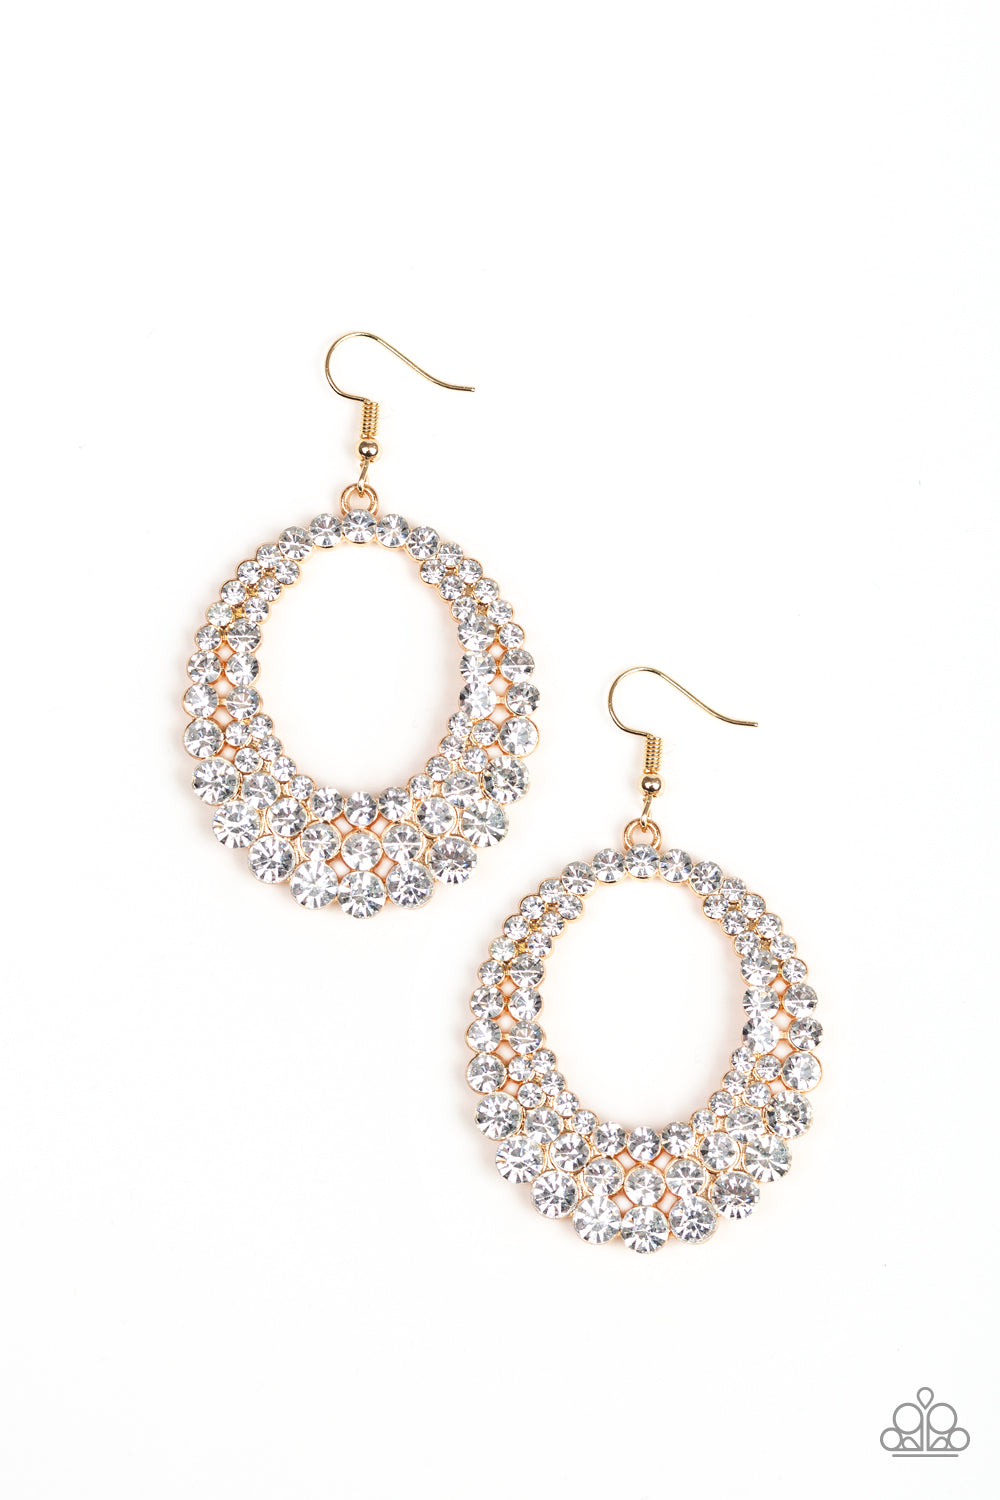 Universal Shimmer - Gold earrings